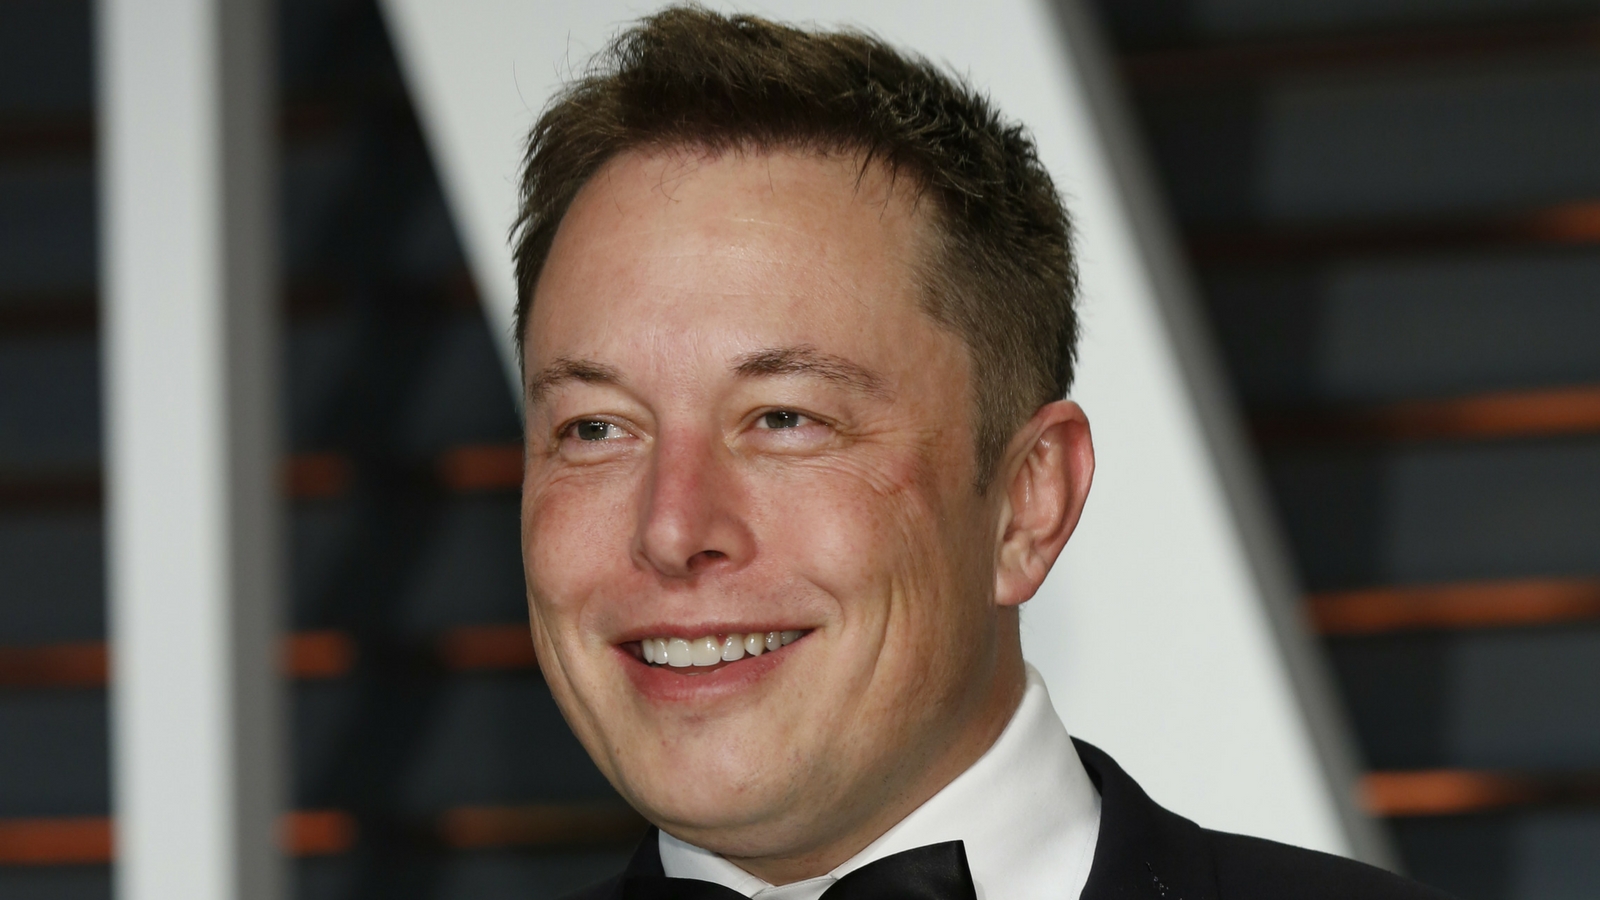 Photo of Elon Musk via Shutterstock.com